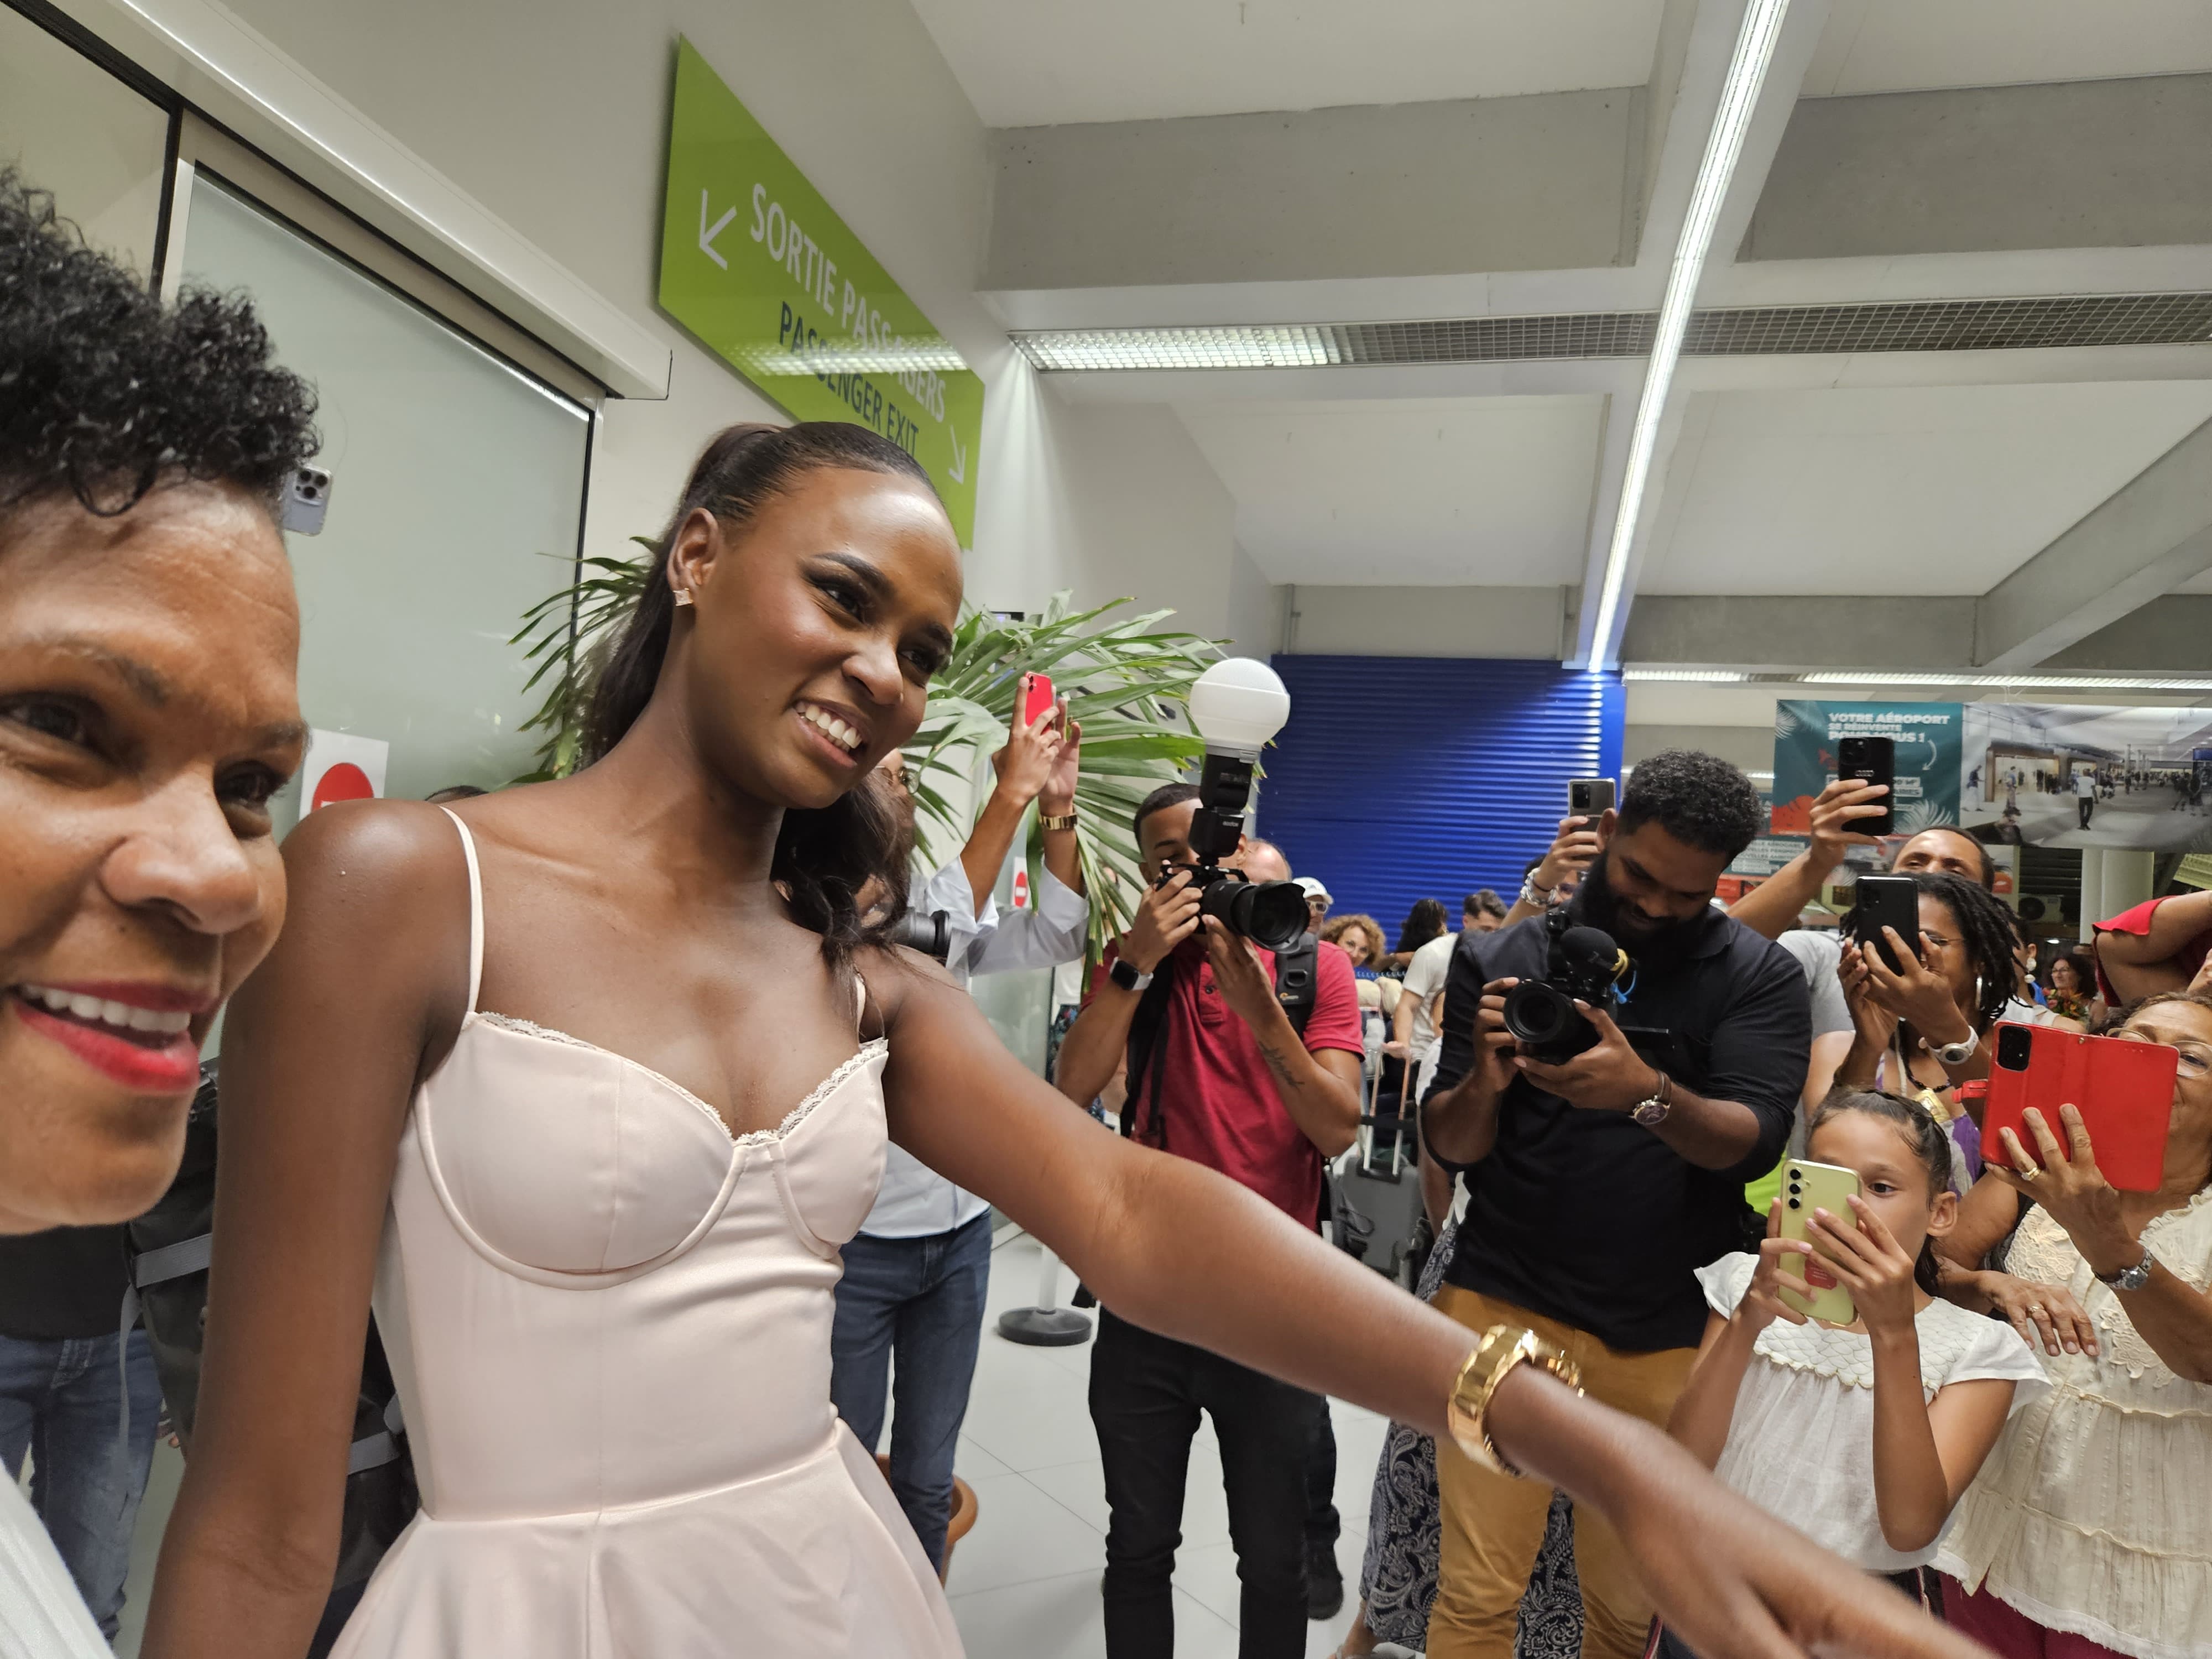     Axelle René de retour en Martinique après l’élection Miss Monde

